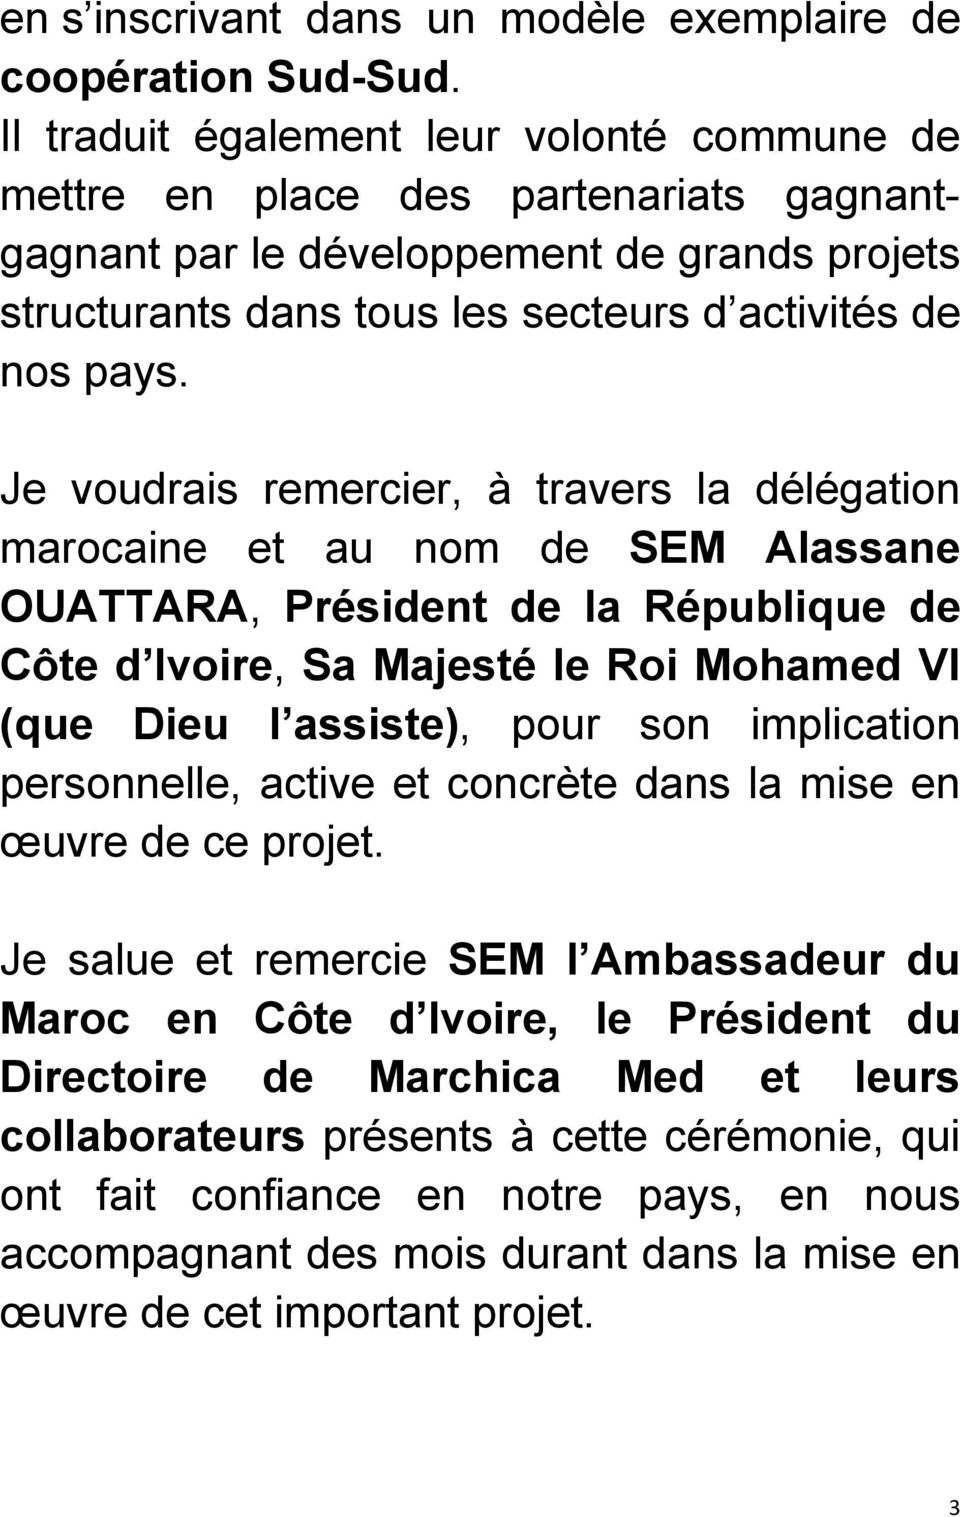 Je voudrais remercier, à travers la délégation marocaine et au nom de SEM Alassane OUATTARA, Président de la République de Côte d Ivoire, Sa Majesté le Roi Mohamed VI (que Dieu l assiste), pour son